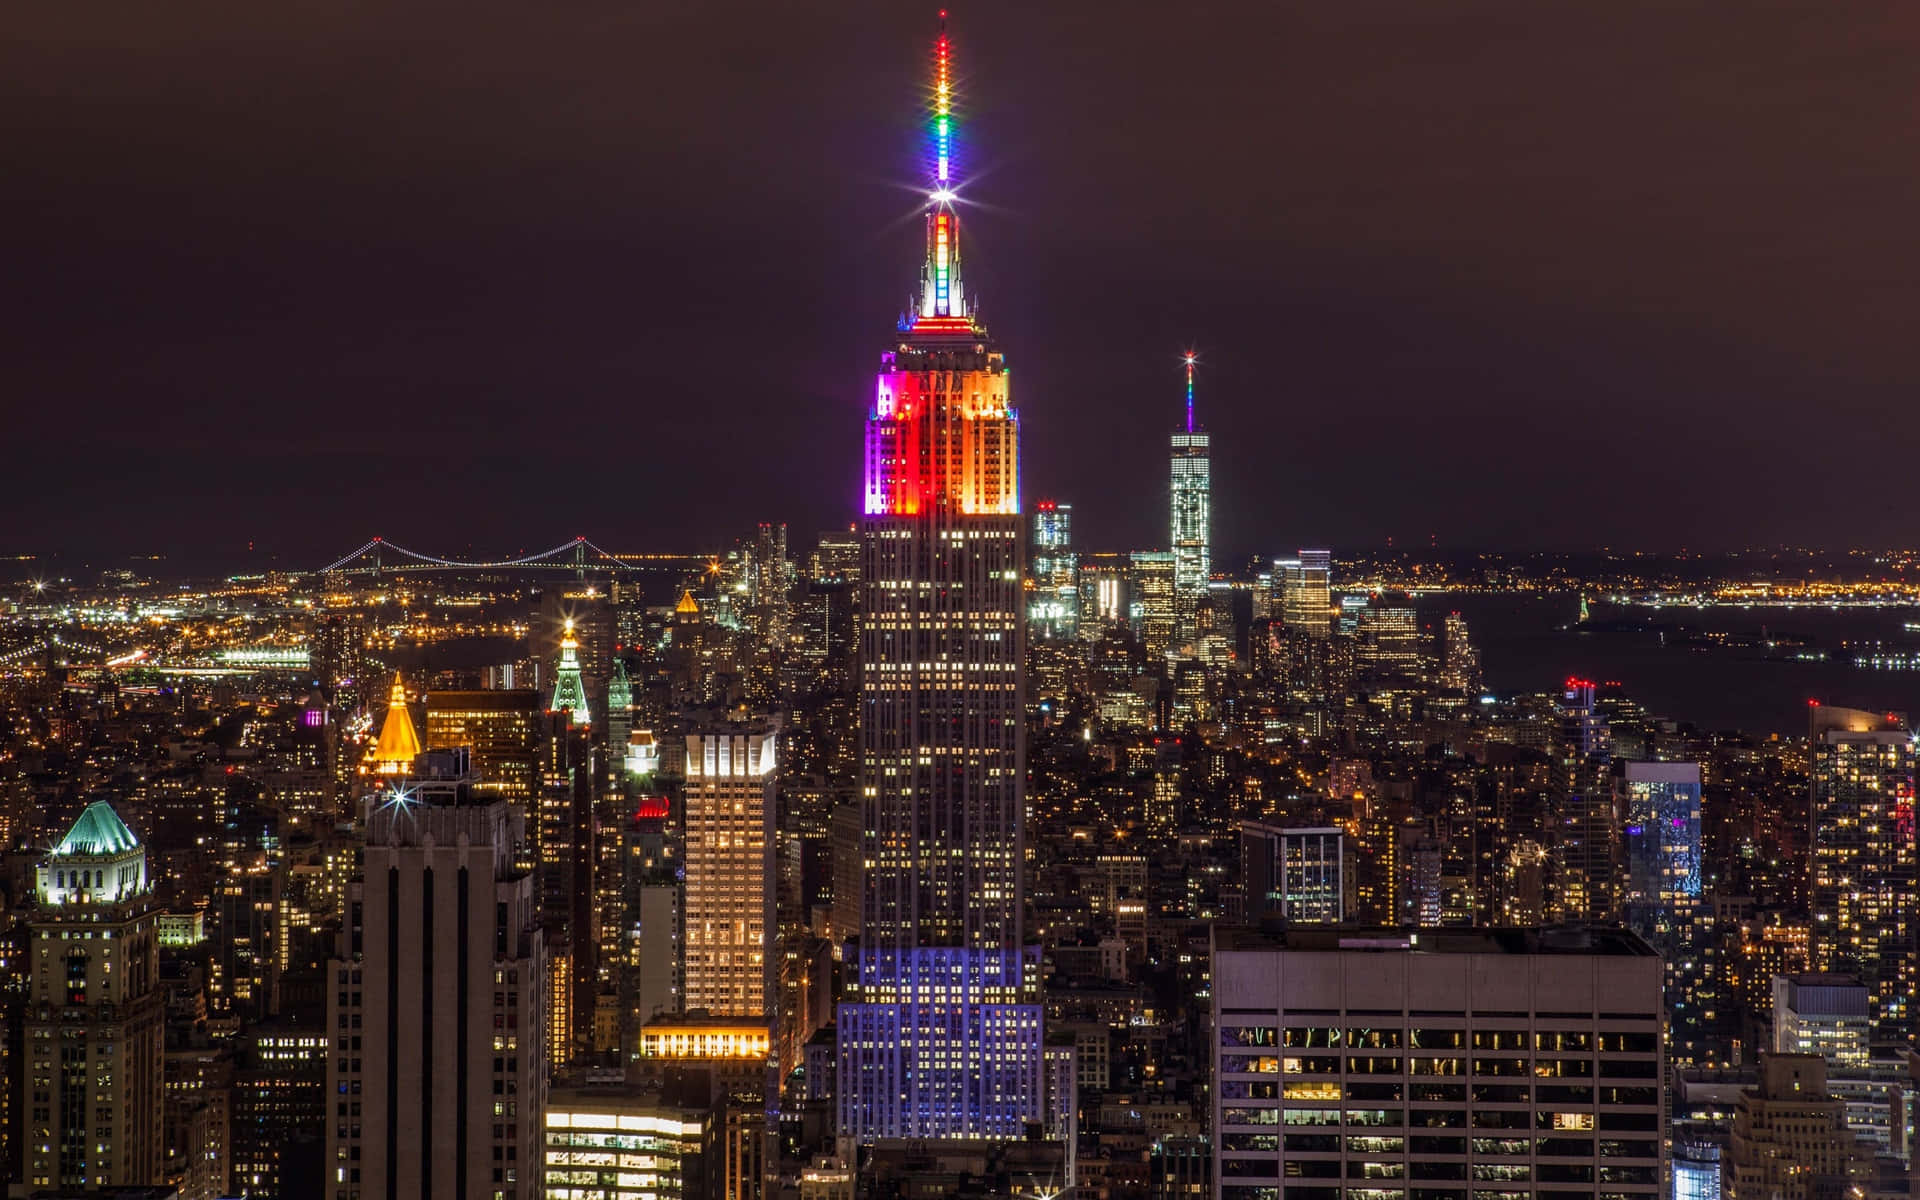 Imagemcolorida Do Empire State Building Em Nova York À Noite.